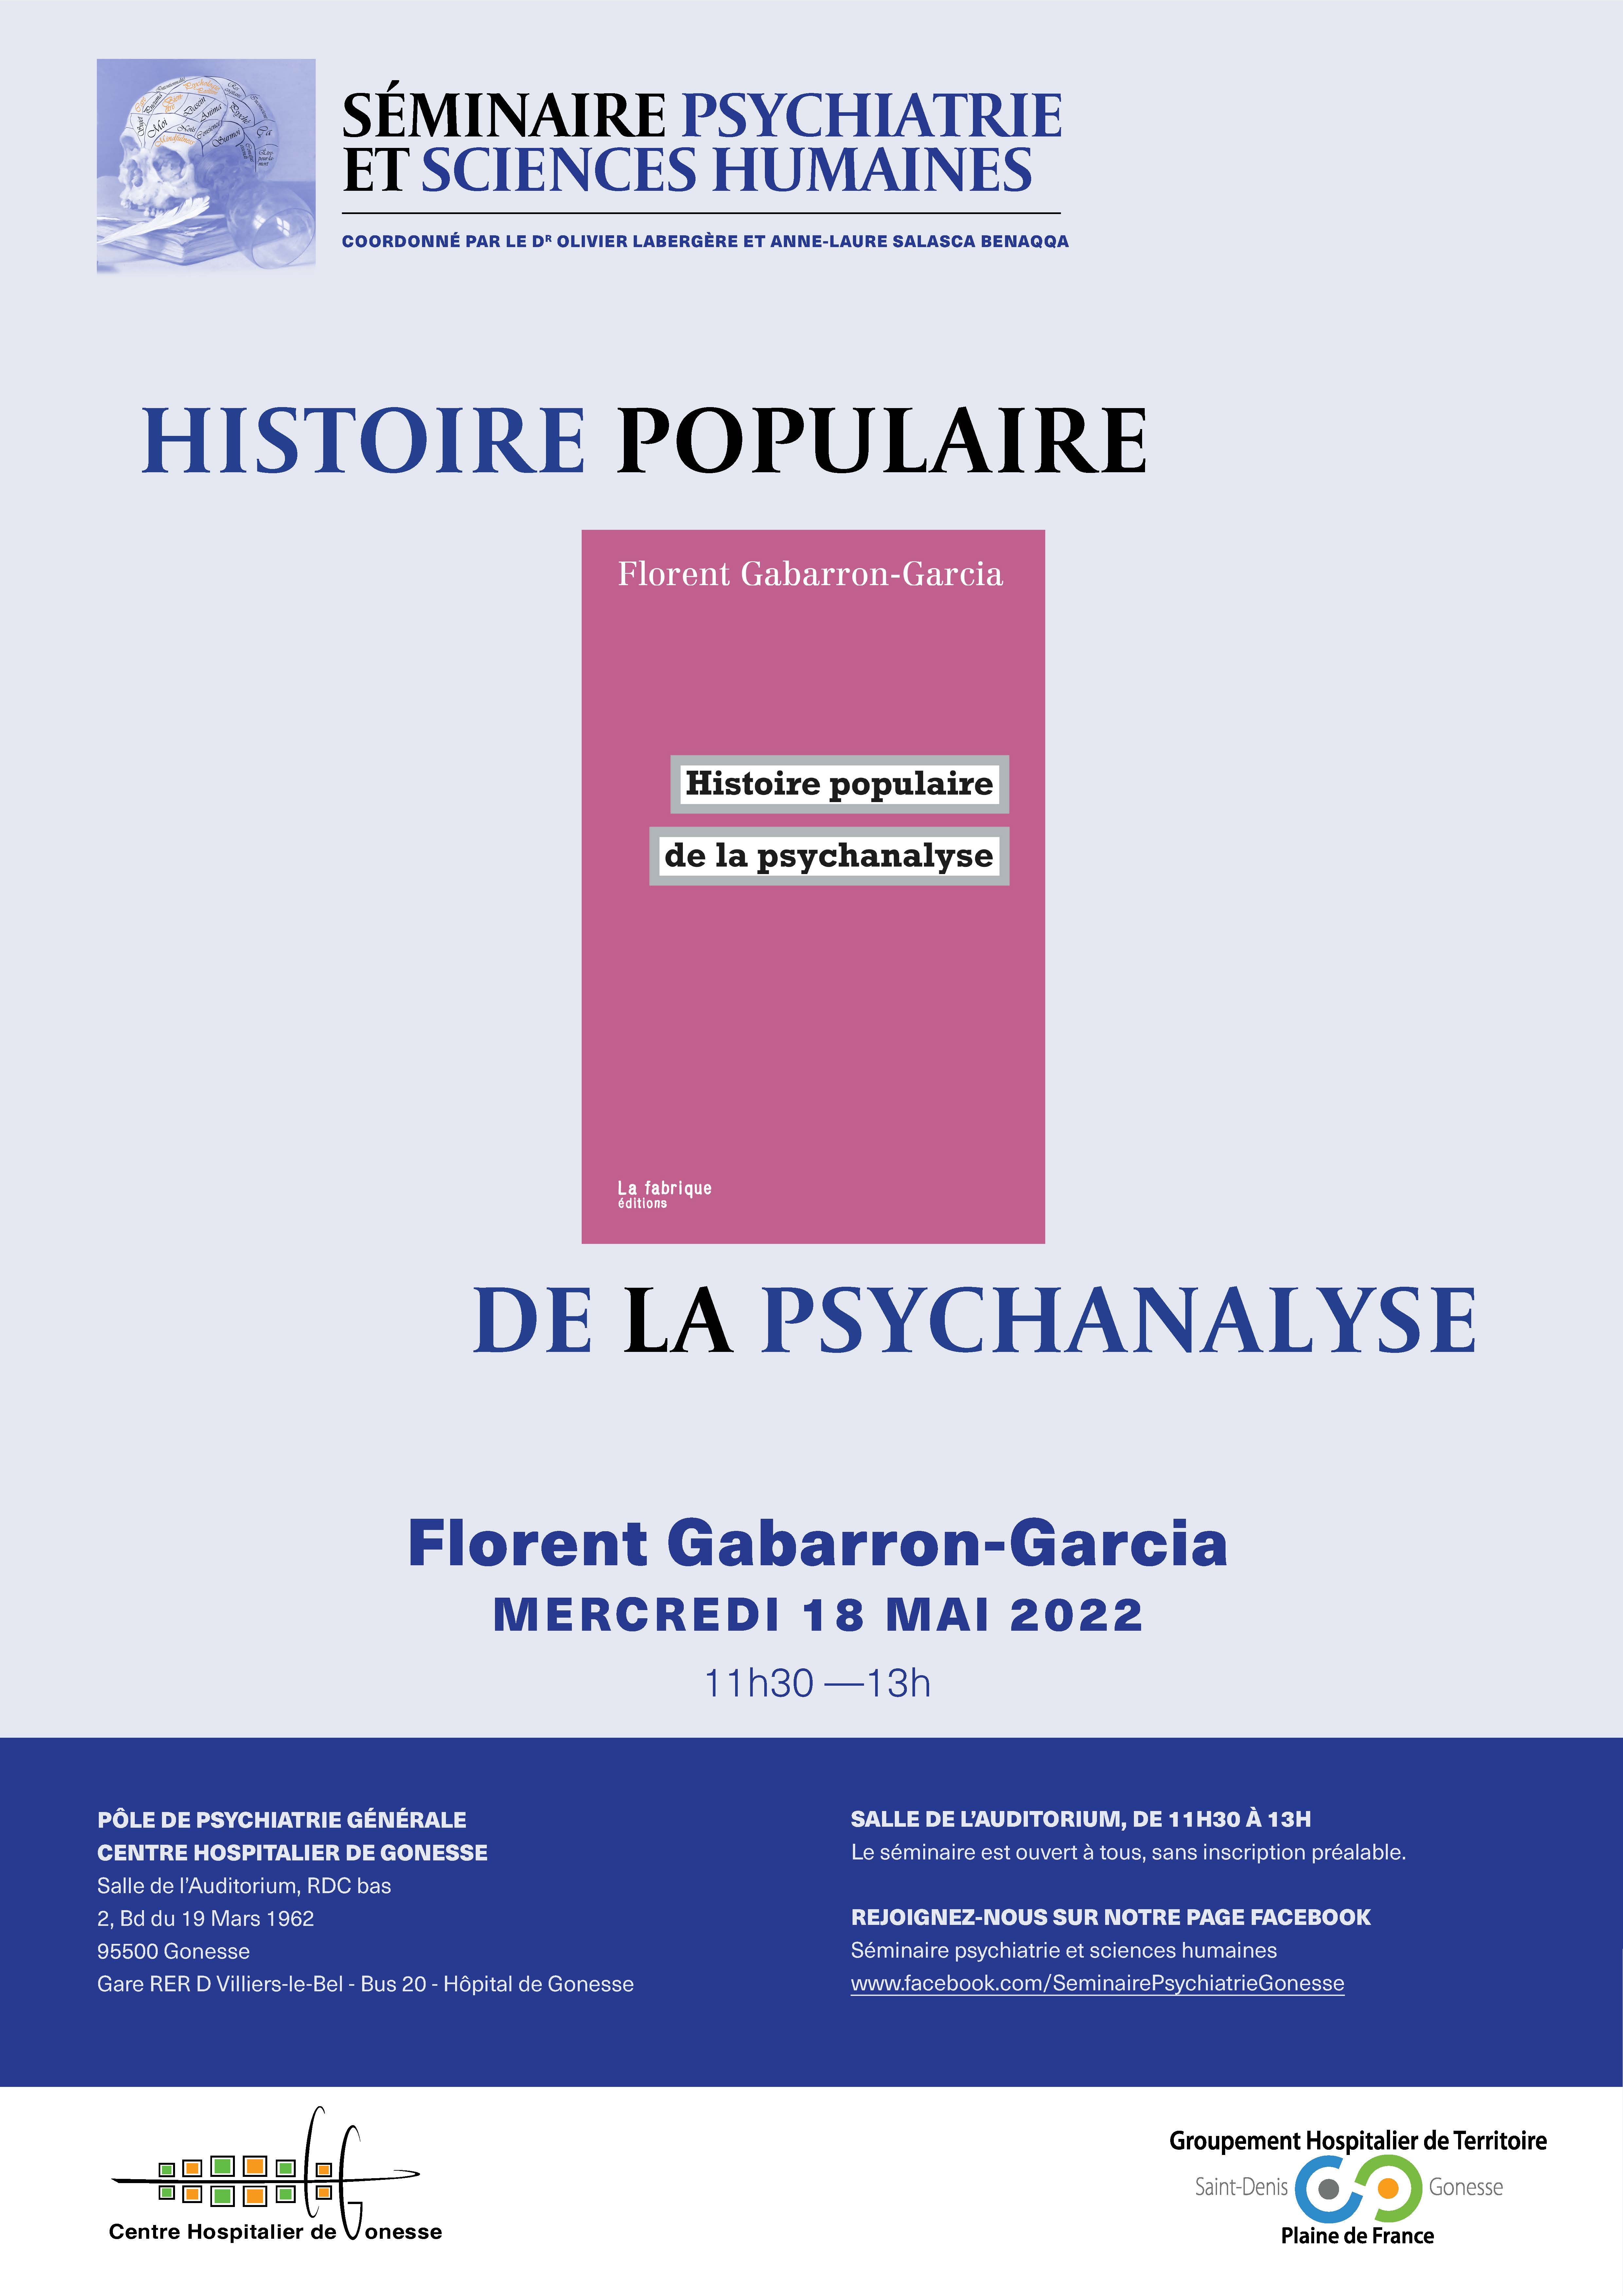 Mercredi 18 mai : Séminaire de psychiatrie et sciences humaines animé par Florent Gabarron-Garcia 